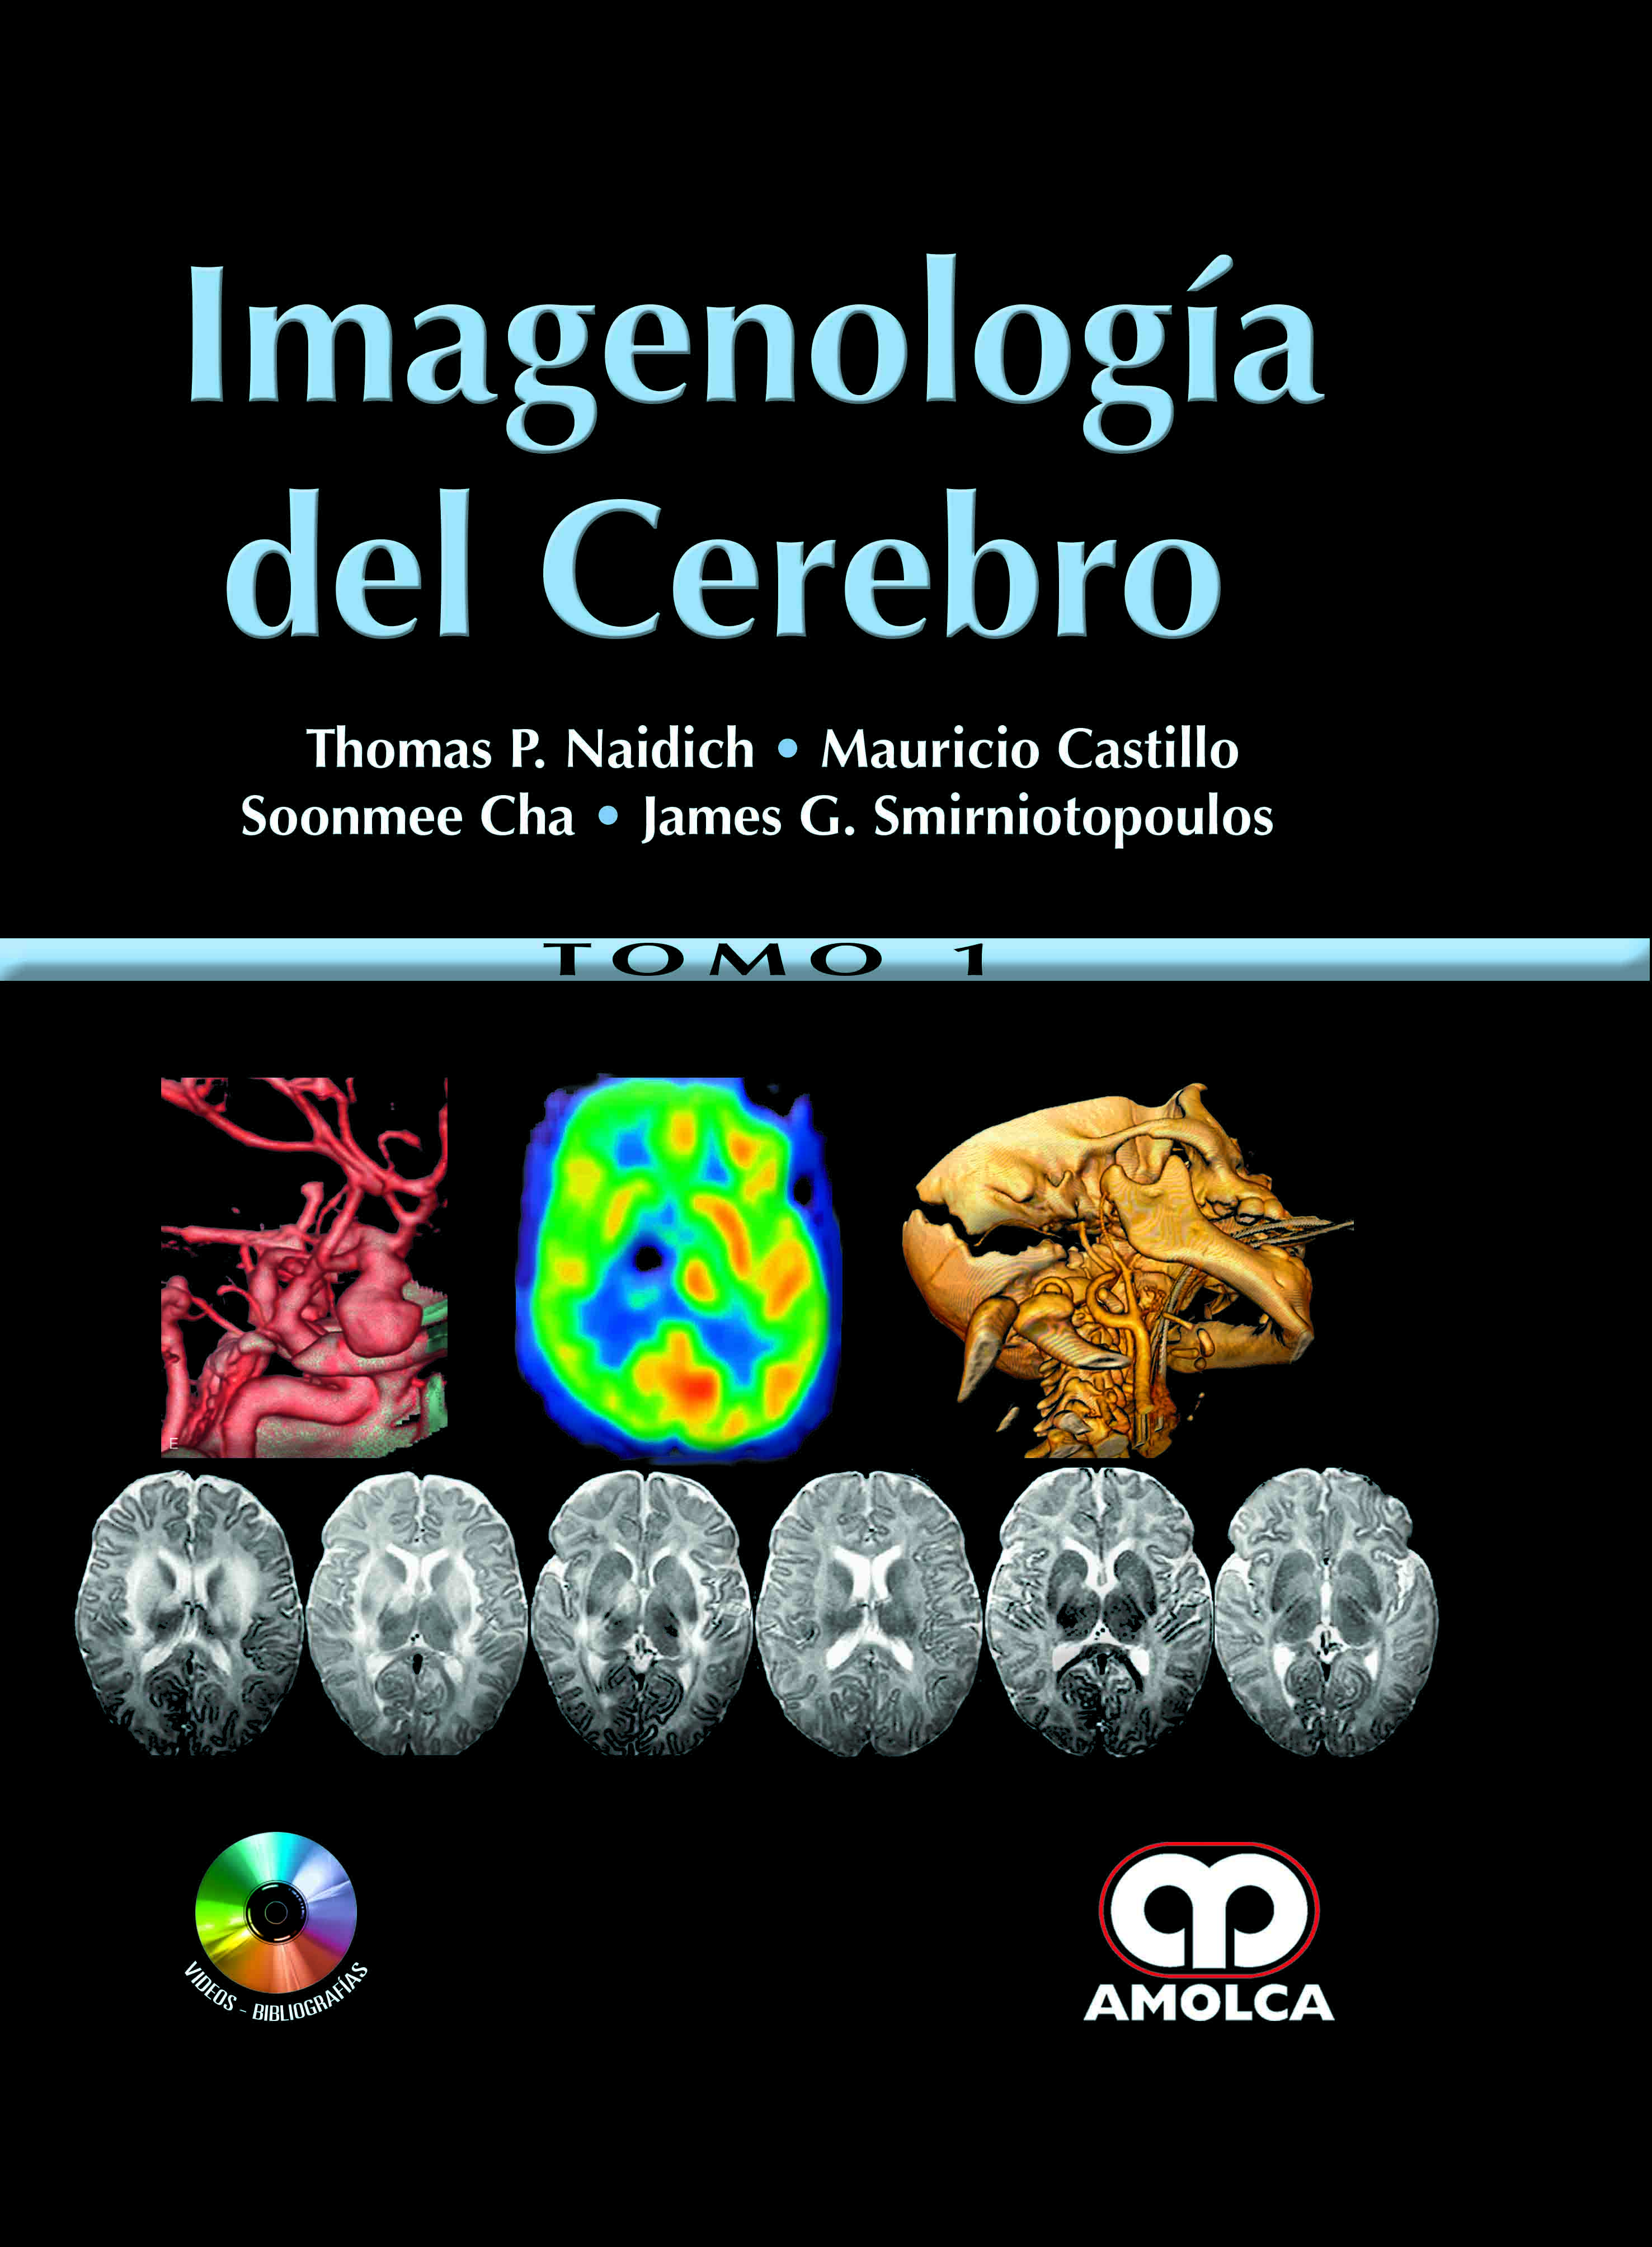 IMAGENOLOGÍA DEL CEREBRO. 2 Vols.